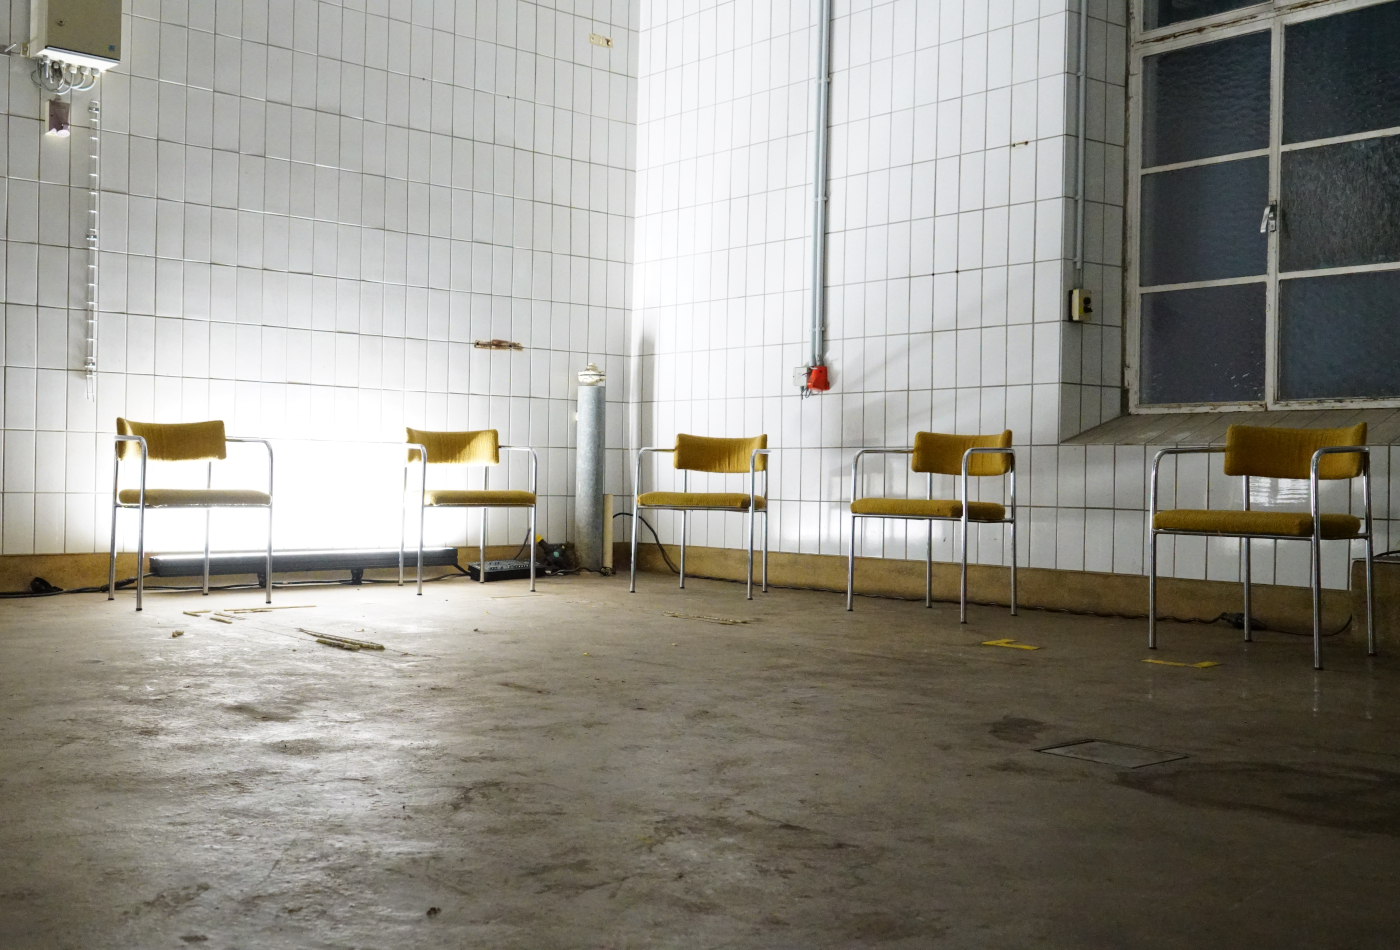 Unbesetzte Stühle stehen im Halbkreis in einem gekachelten Raum.